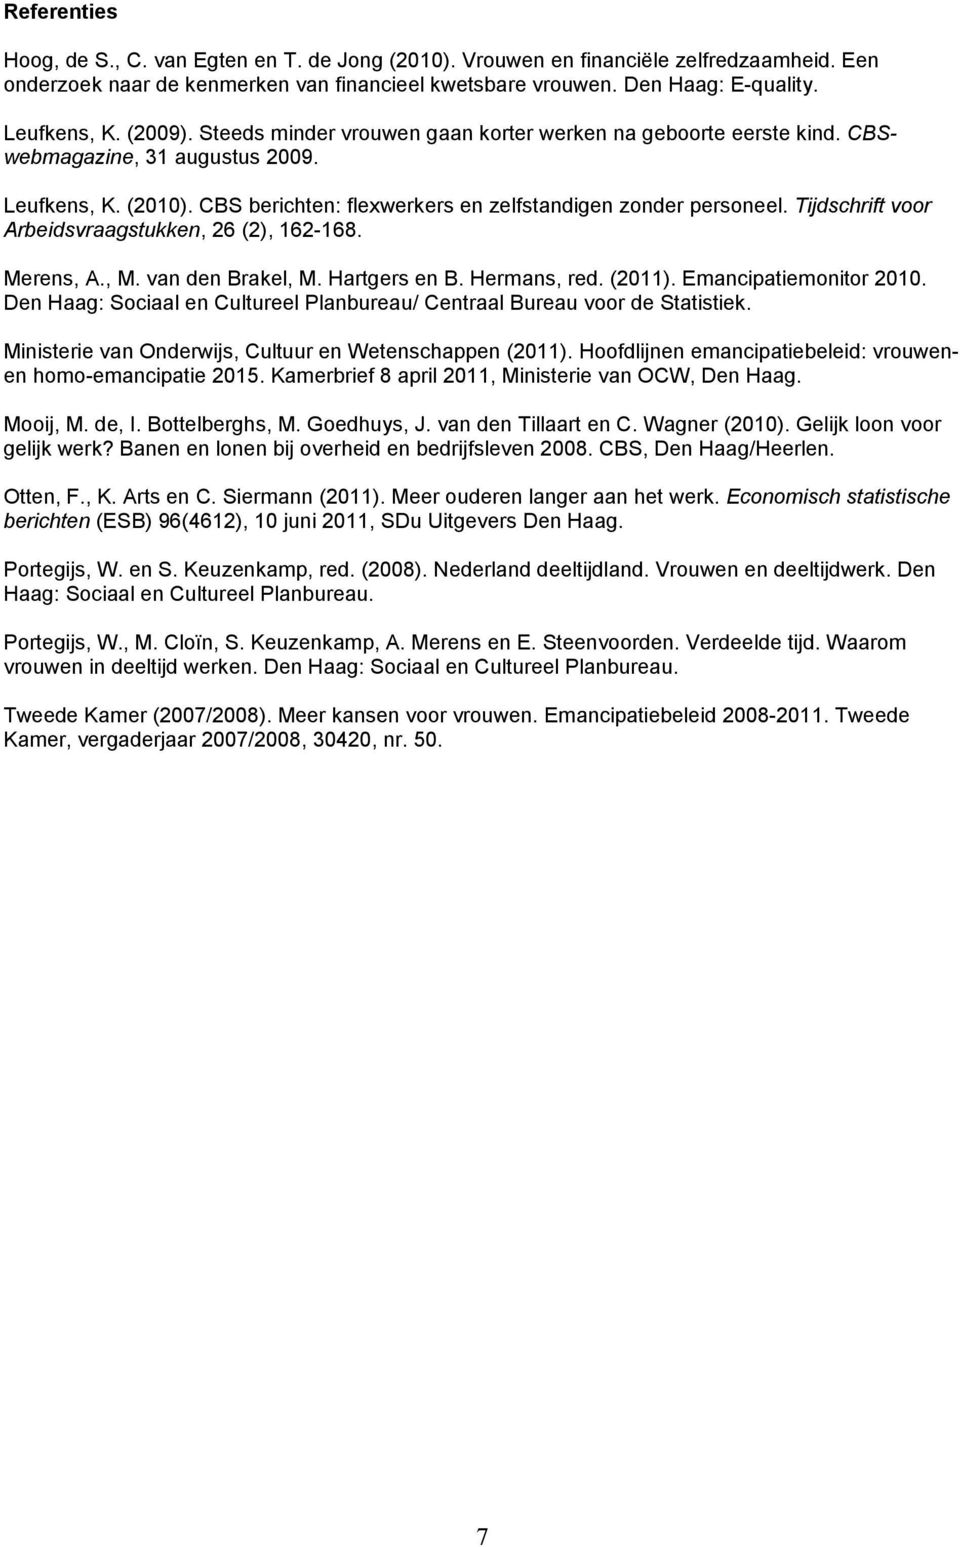 Tijdschrift voor Arbeidsvraagstukken, 26 (2), 162-168. Merens, A., M. van den Brakel, M. Hartgers en B. Hermans, red. (2011). Emancipatiemonitor 2010.